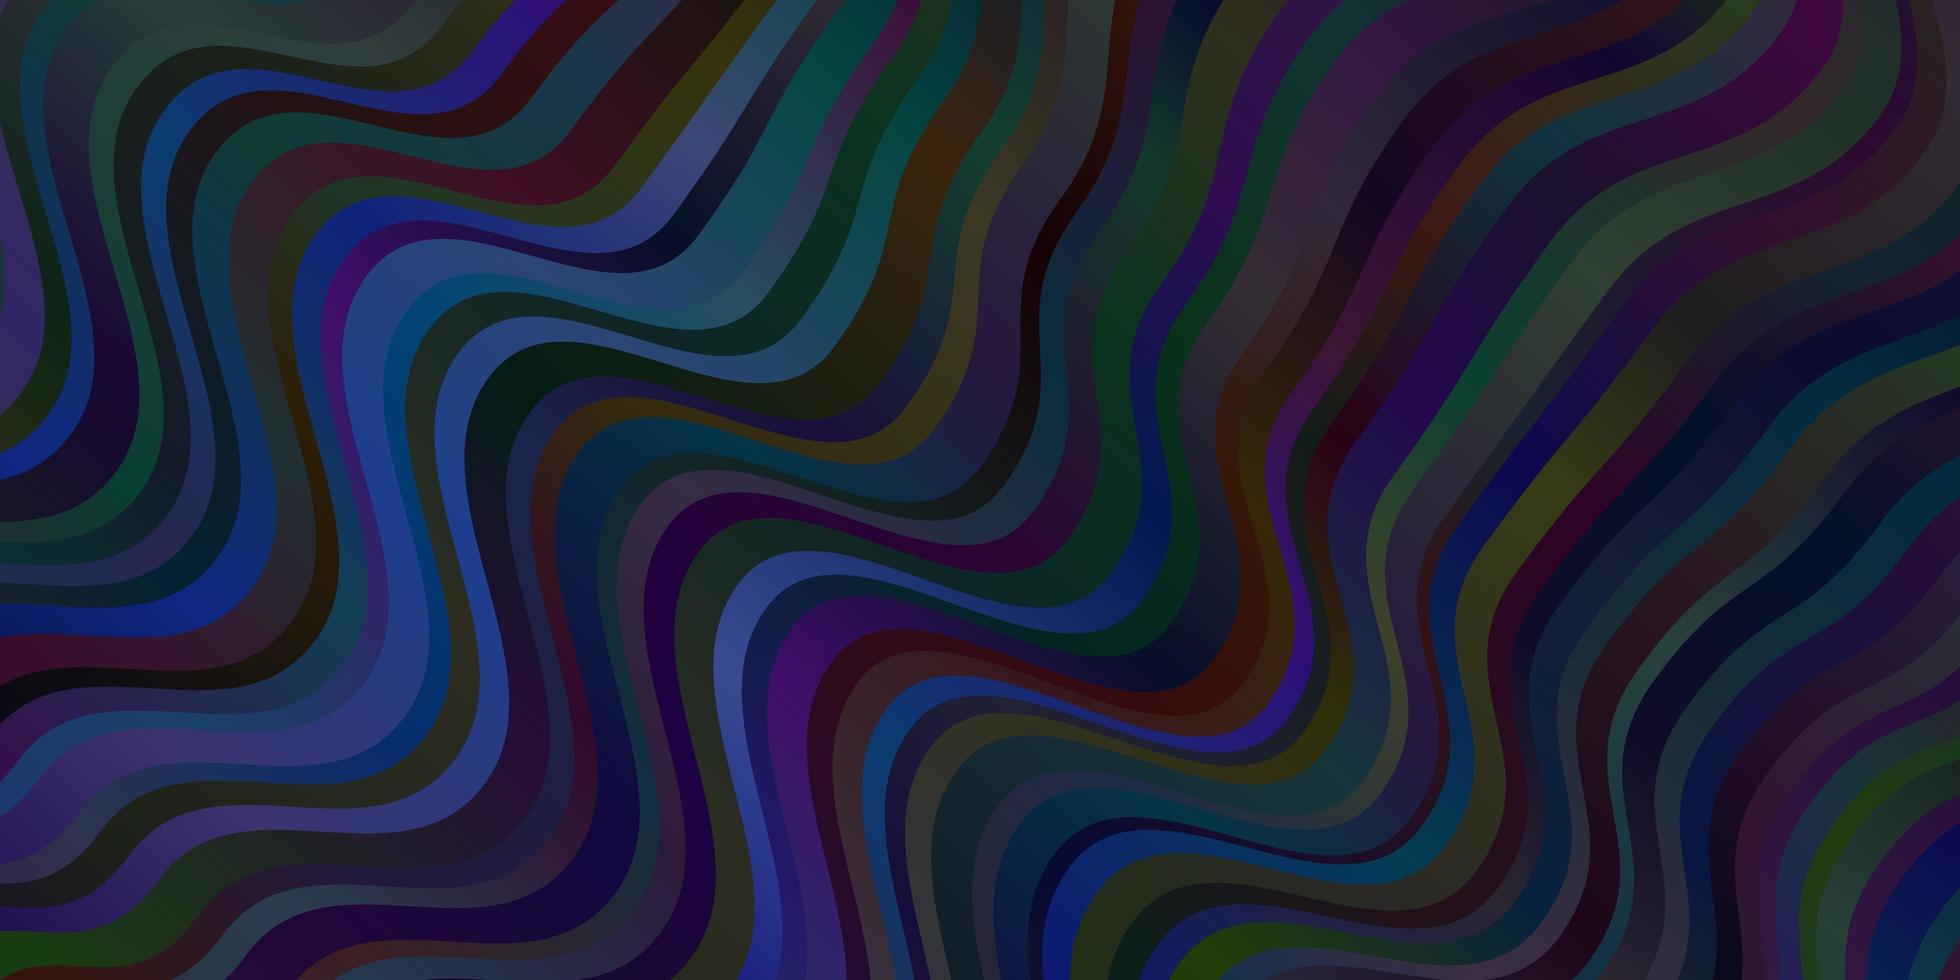 dunkelblaue Vektorschablone mit gekrümmten Linien. vektor